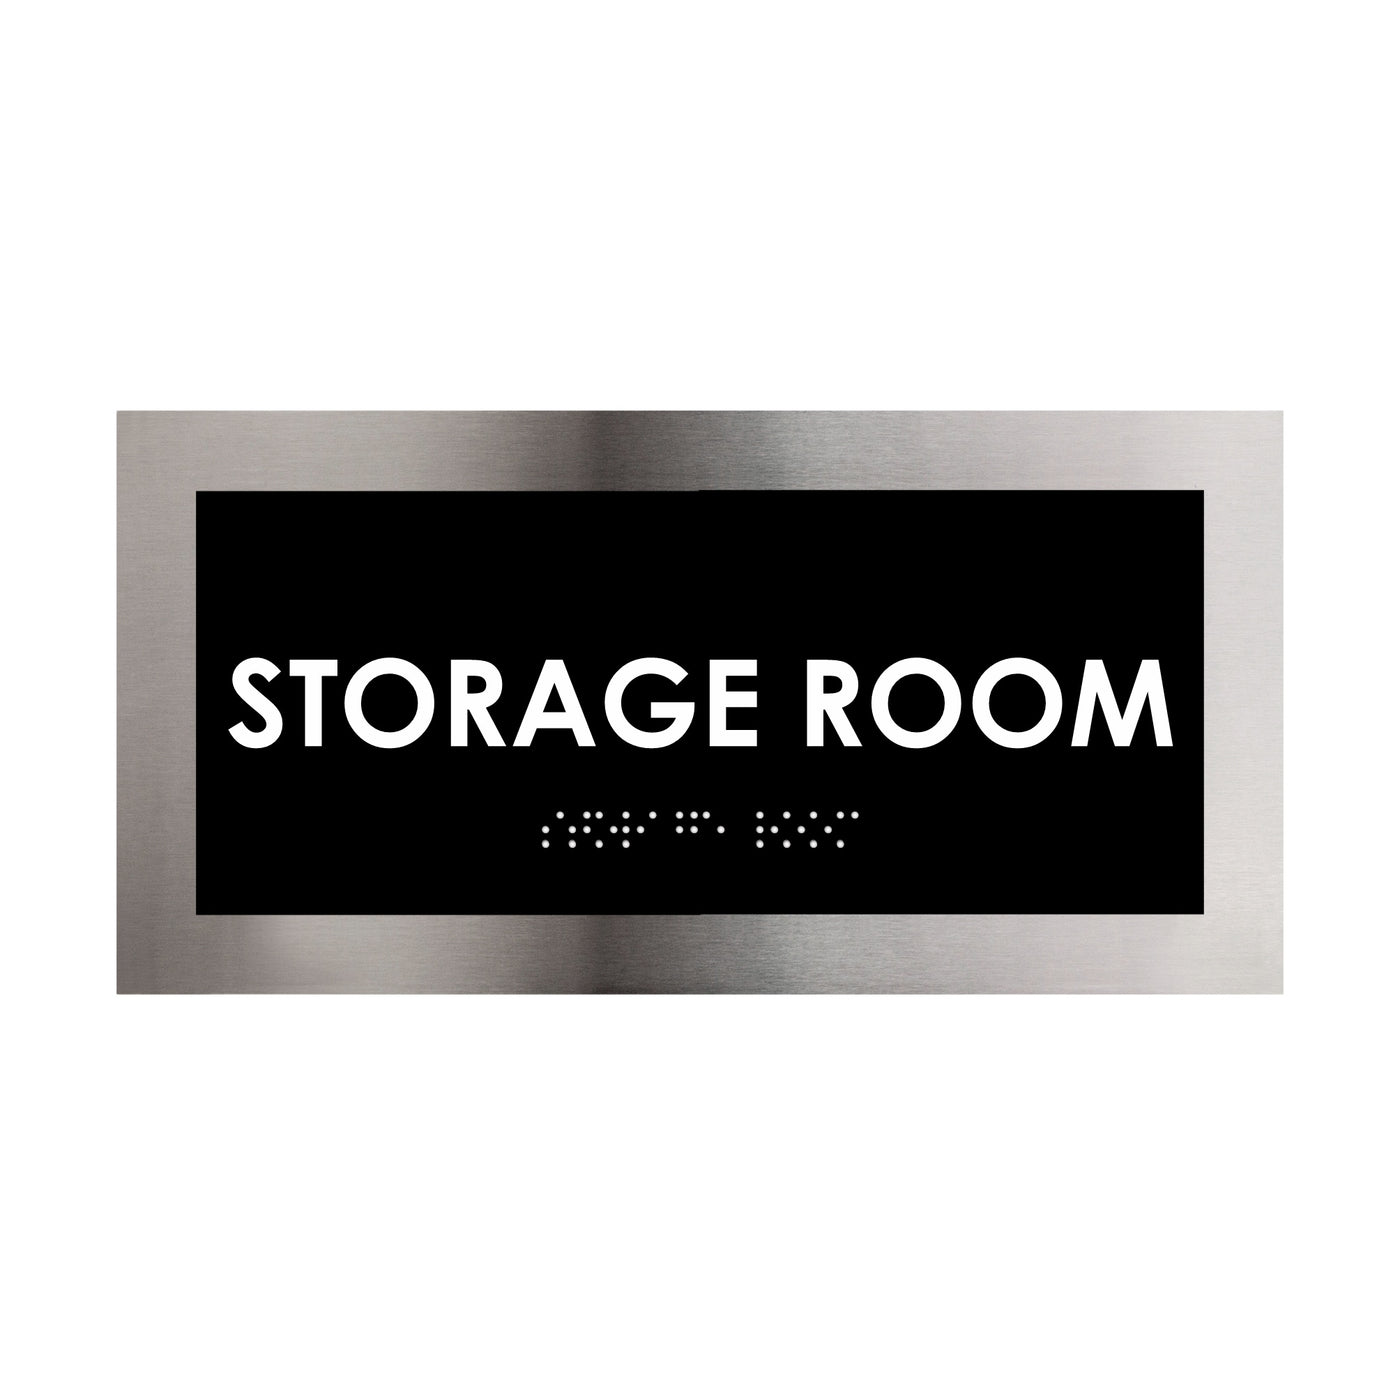 Door Signs - Storage Room Door Sign - Stainless Steel Plate - "Modern" Design